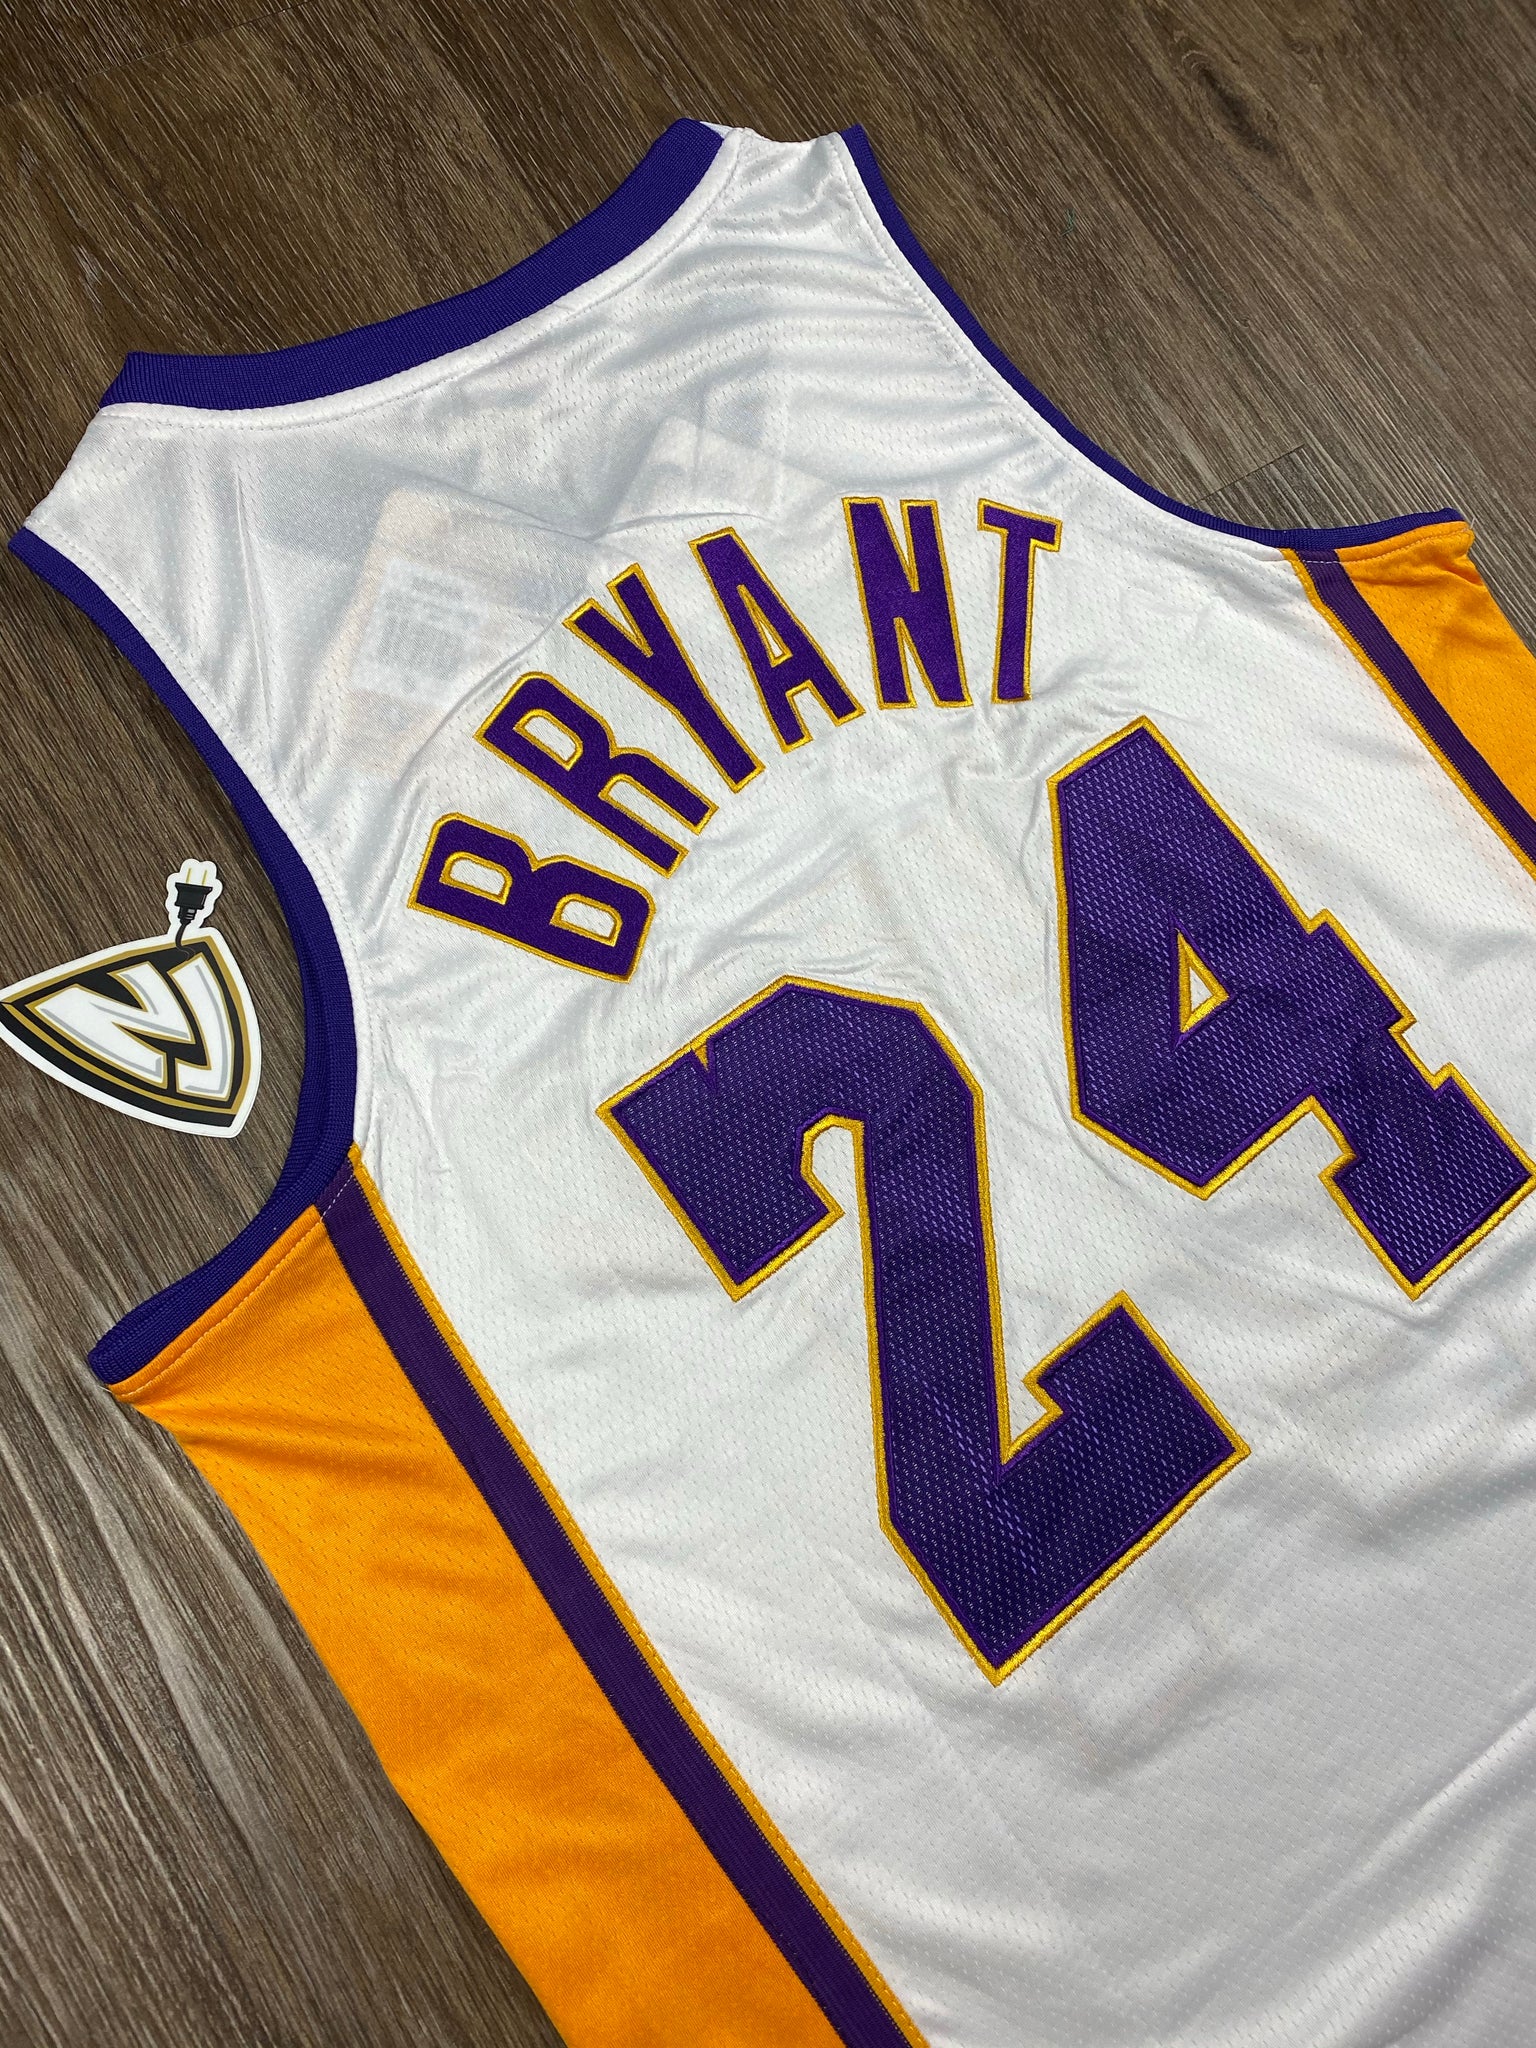 LA Lakers Kobe Bryant 24 2010 NBA Finals – NewJerseysPlug